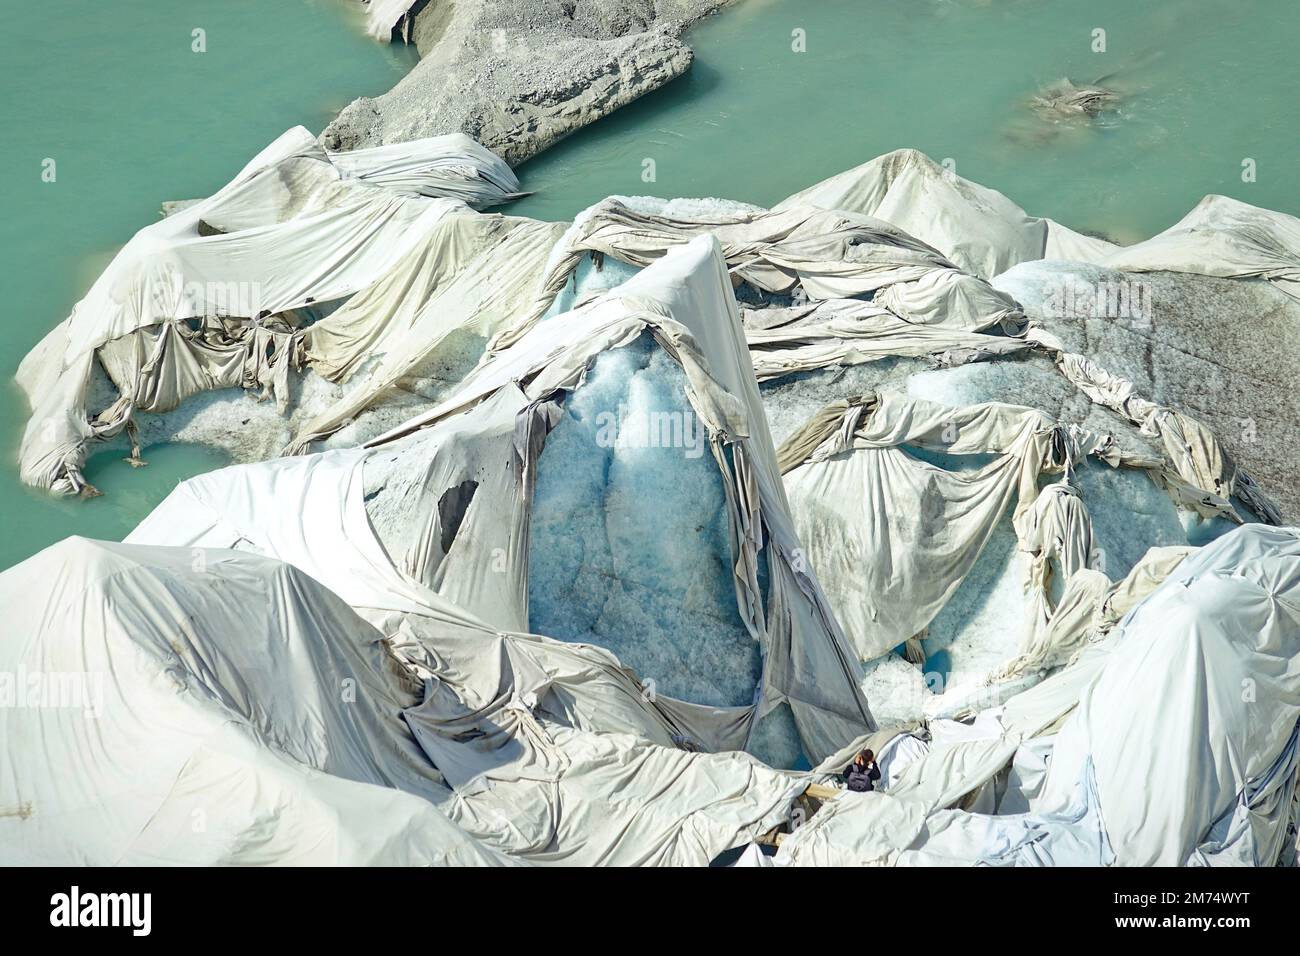 La fonte du glacier du Rhône est le signe le plus visible du changement climatique. En raison des températures élevées, les feuilles blanches ne peuvent plus protéger le glacier Banque D'Images